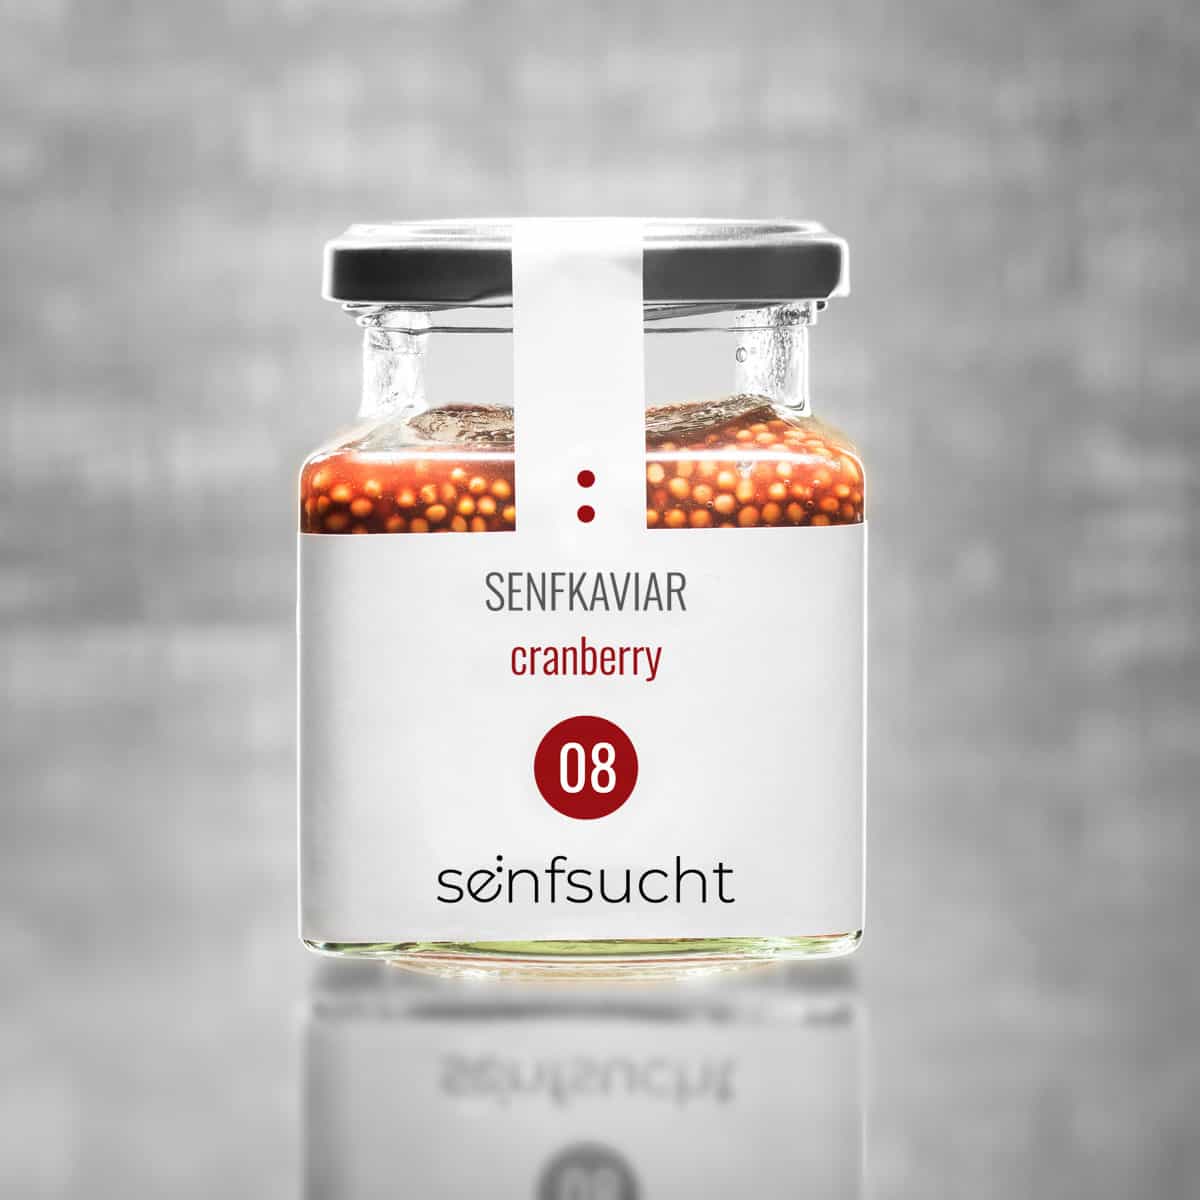 Senfkaviar | cranberry